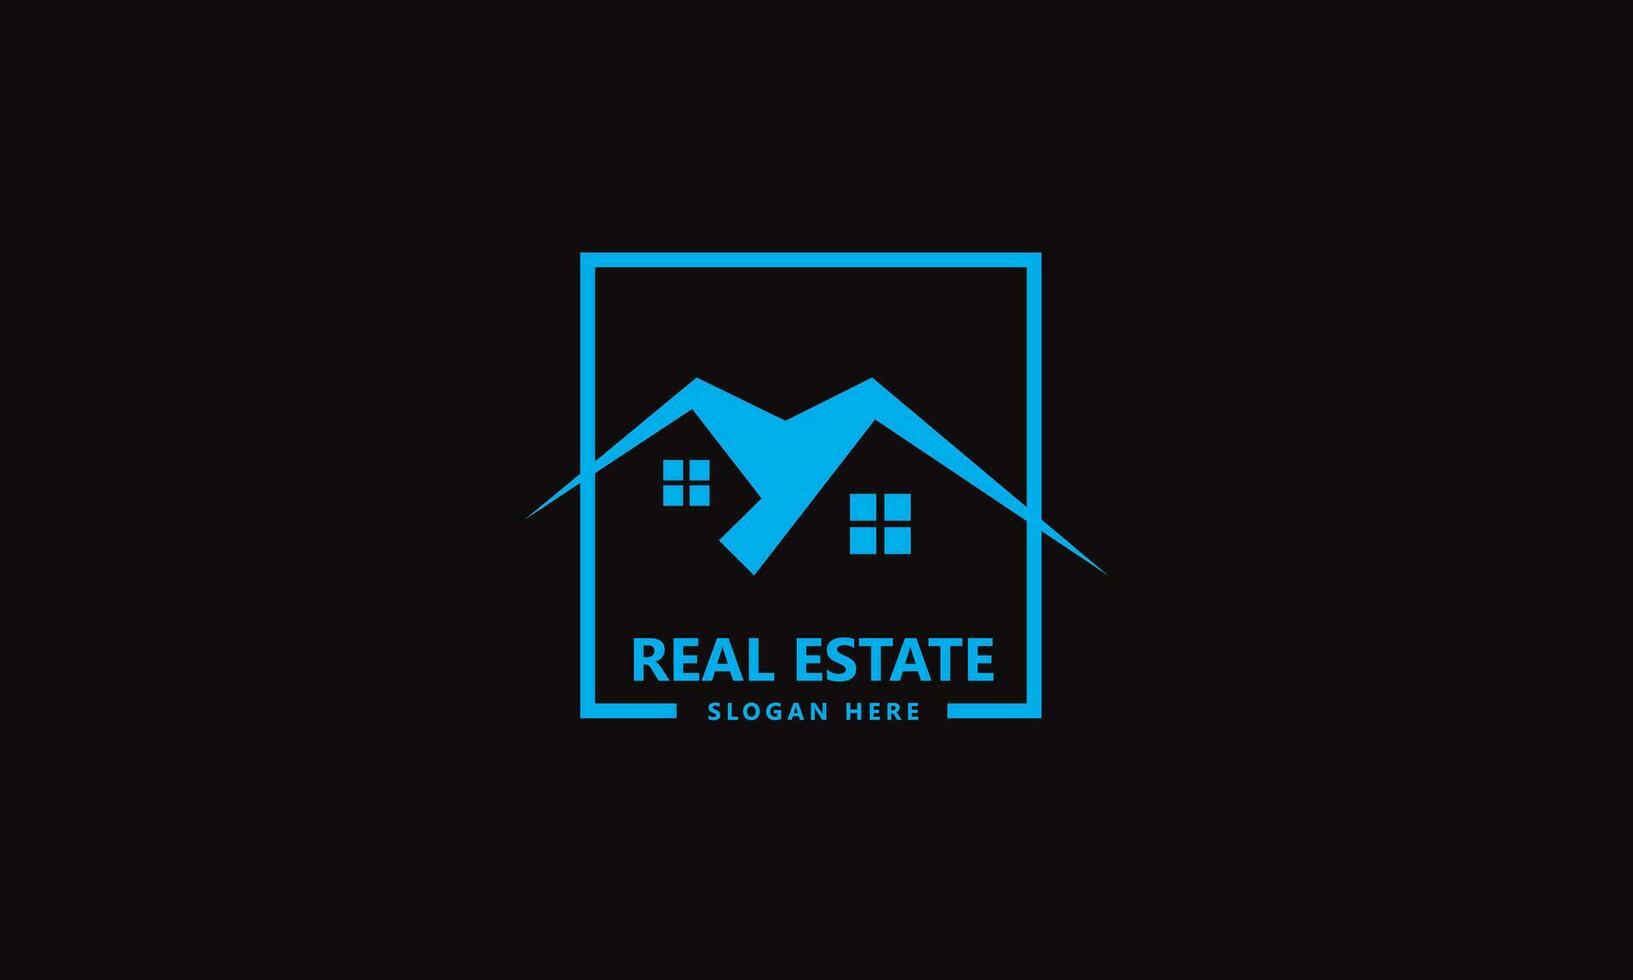 Home build construction real estate logo vector